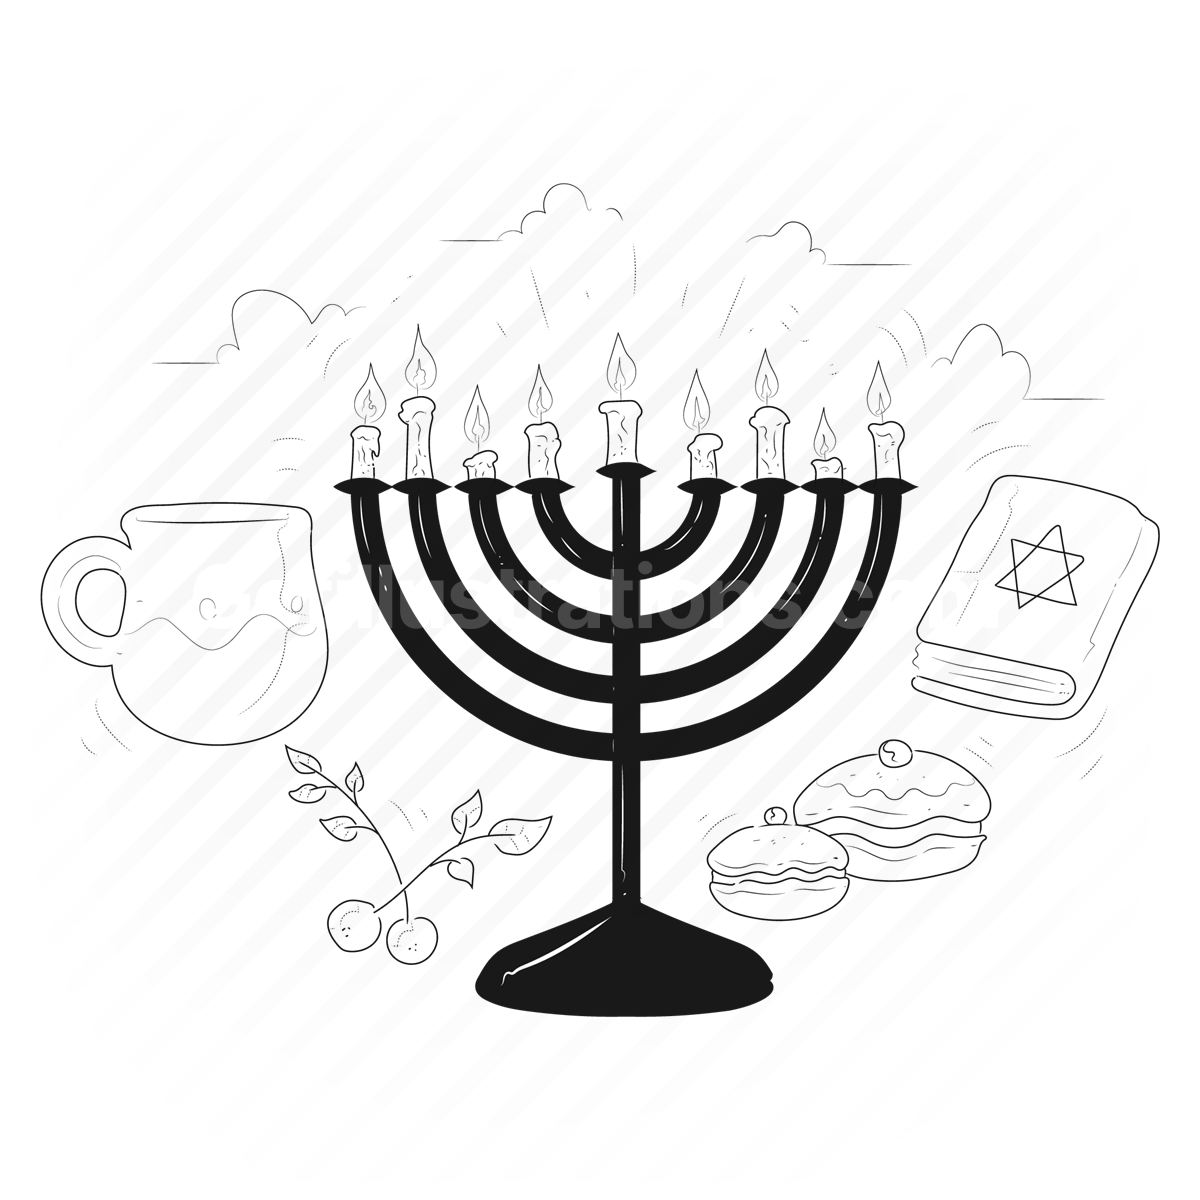 hanukkah, religion, religious, culture, jewish, judiasm